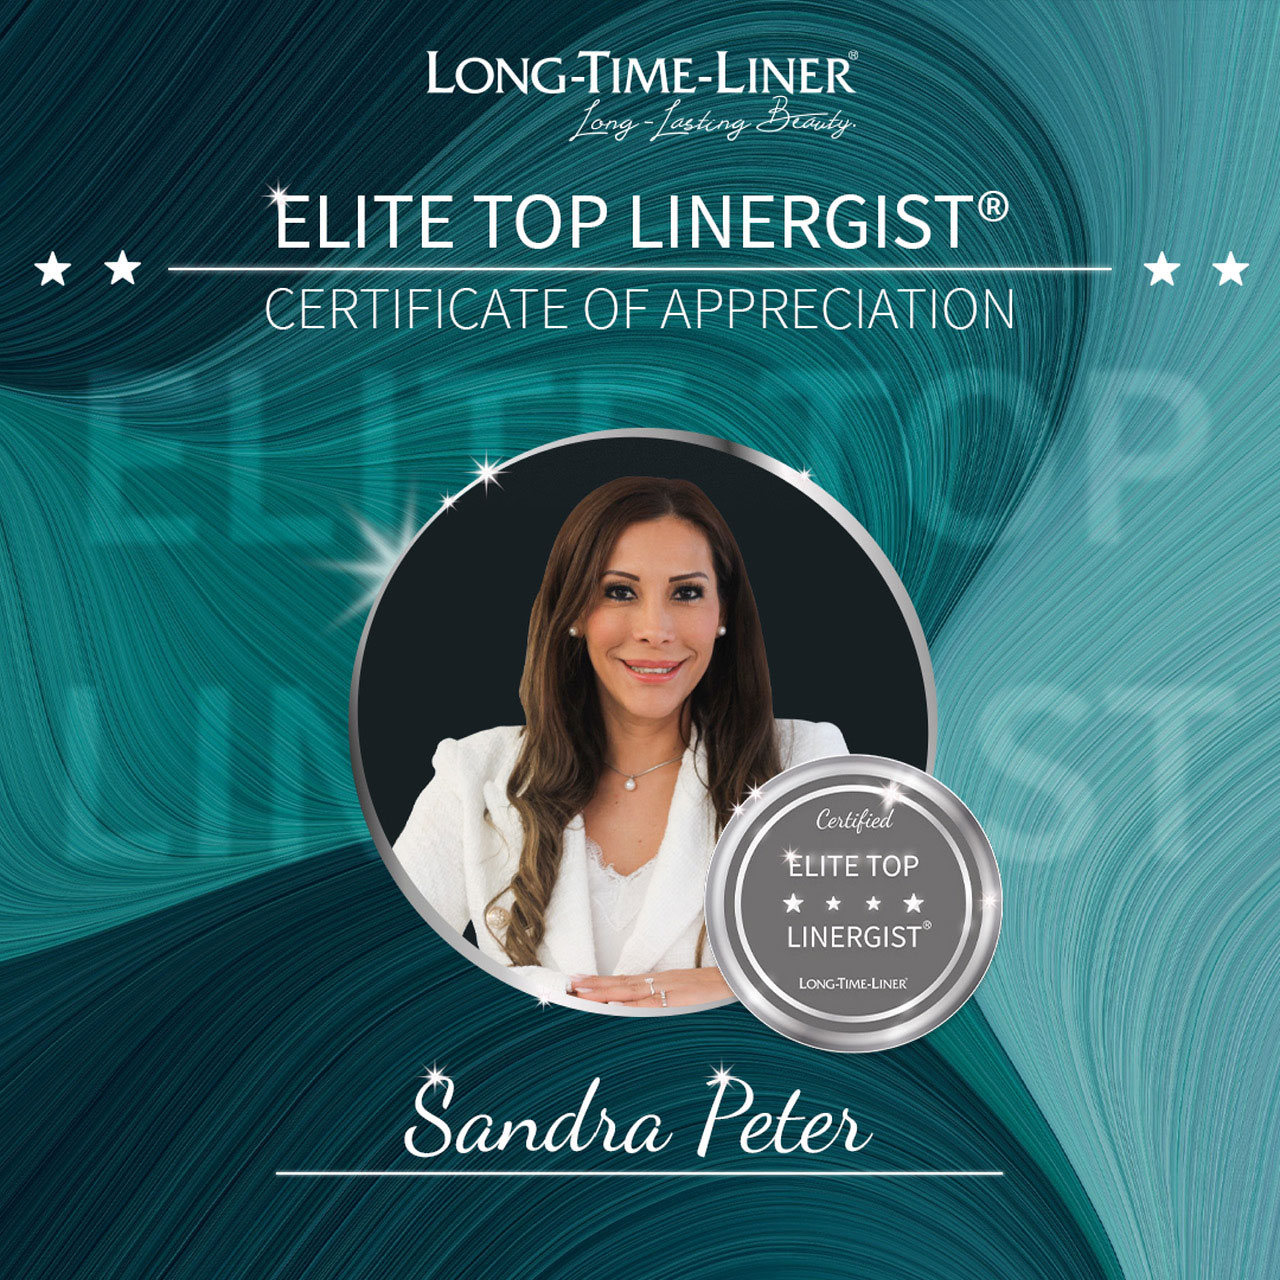 Sandra Peter, Elite top Linergist